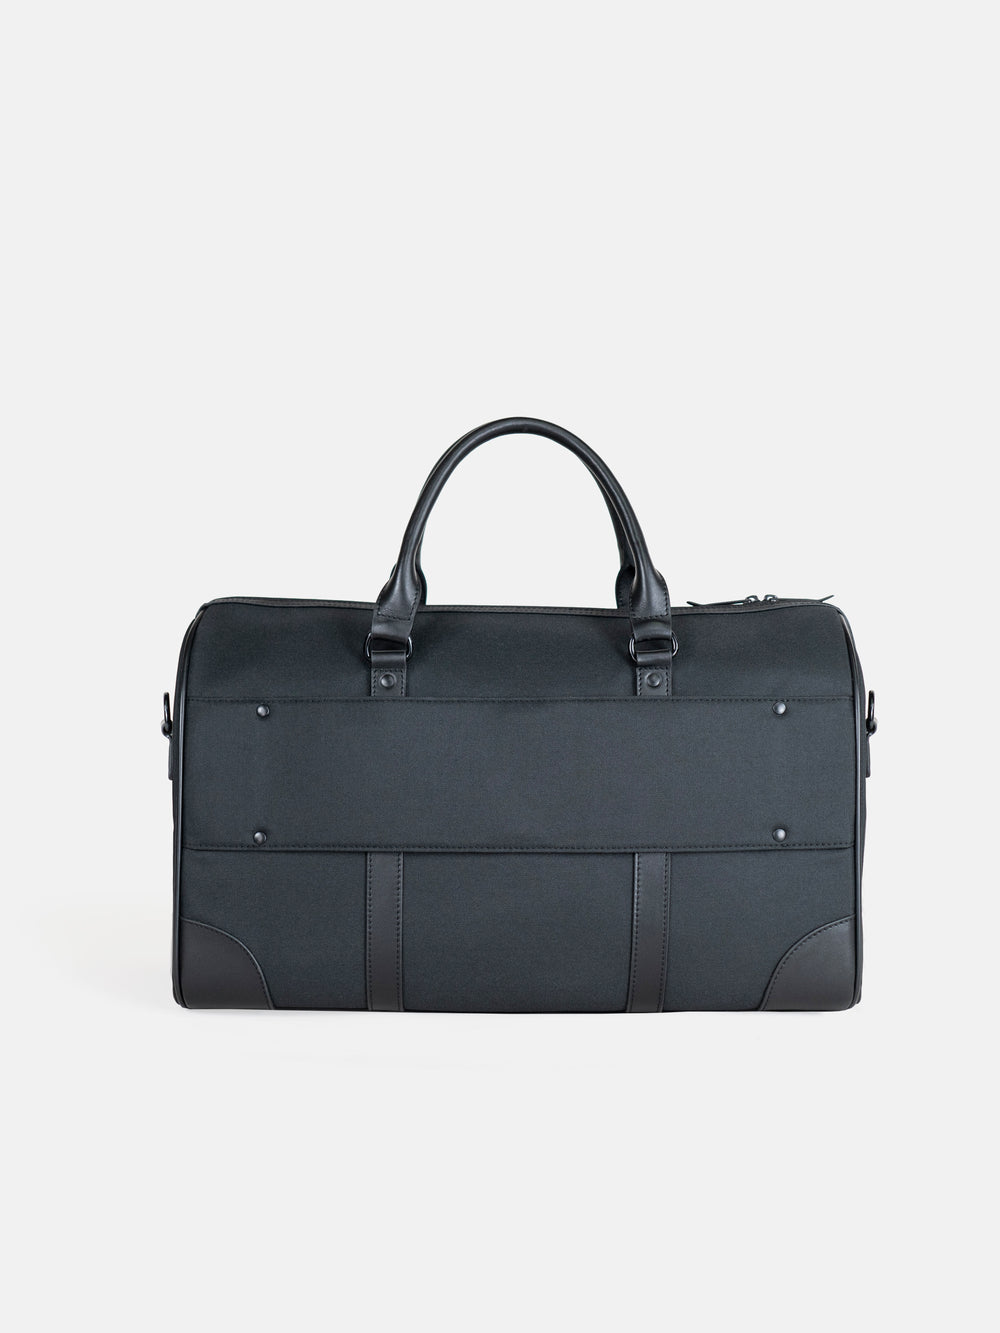 vocier black duffel bag for suitcases